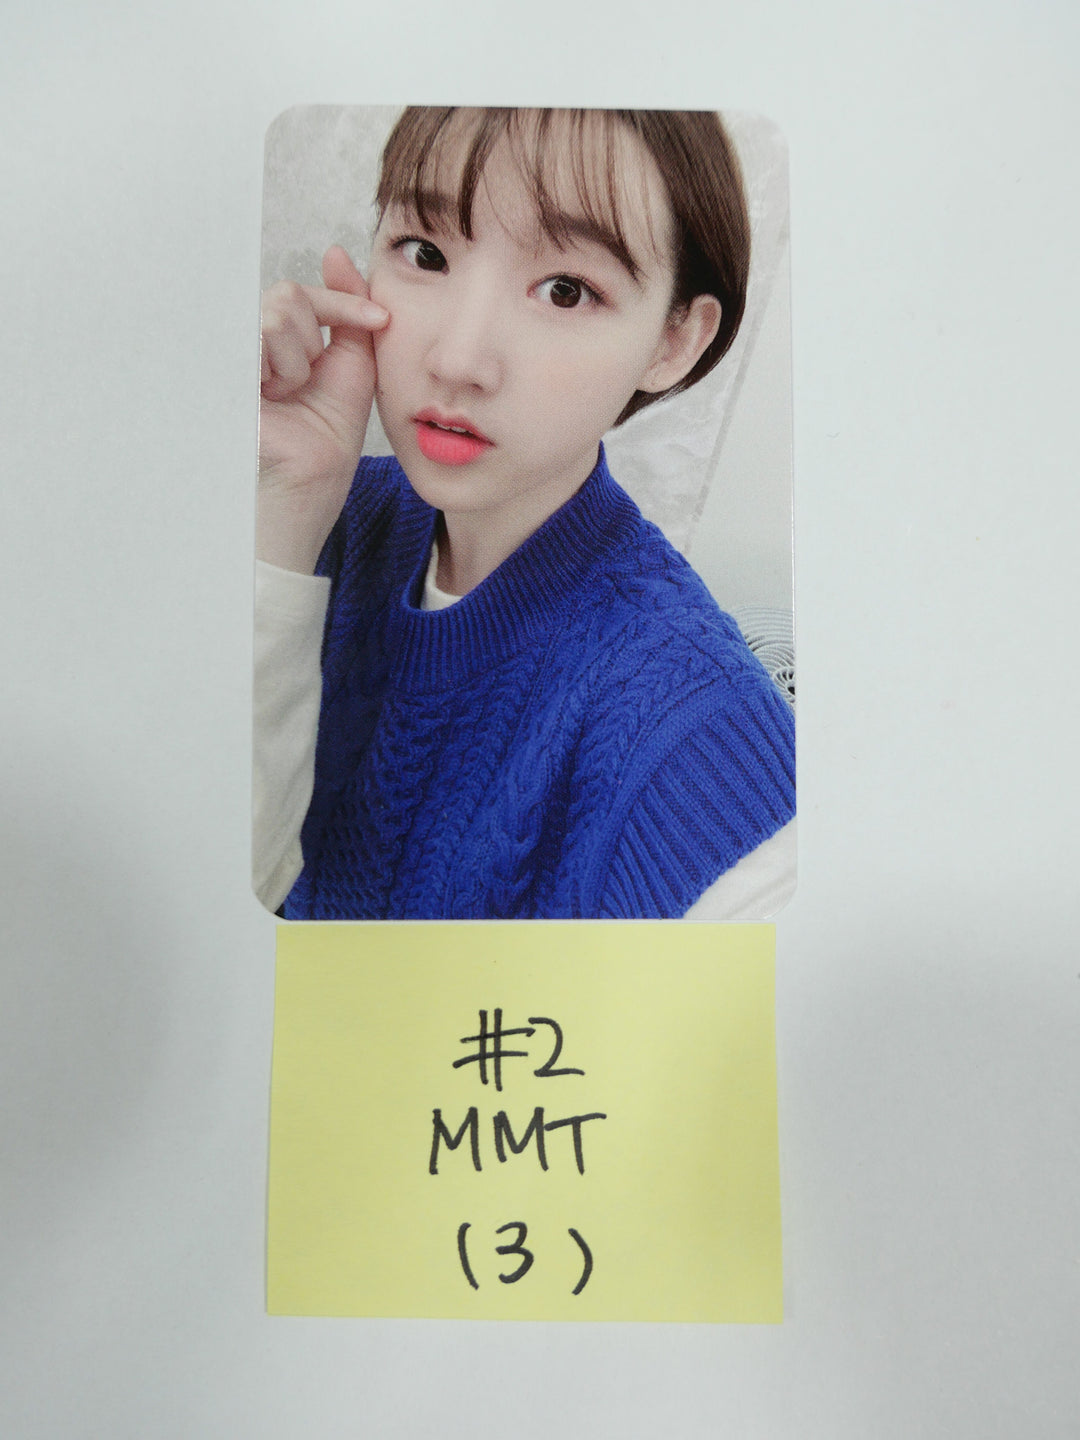 위클리 "위플레이" 미니 3집 - MMT 이벤트 선주문 포토카드